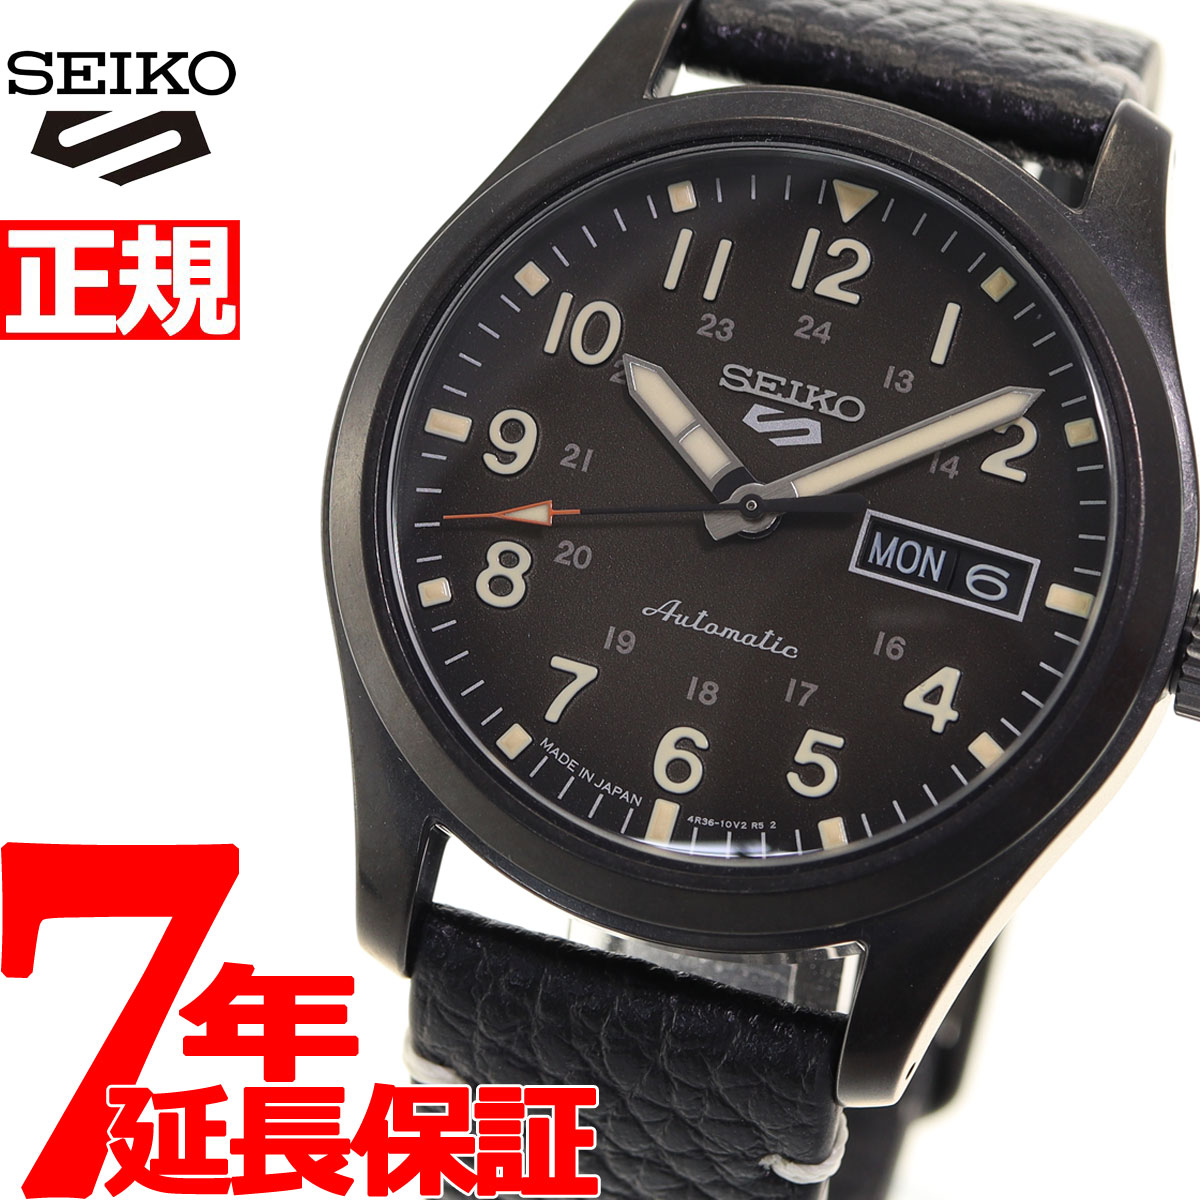 セイコーファイブ セイコー5 スポーツ SEIKO 5 SPORTS 自動巻き メカニカル 流通限定モデル 腕時計 メンズ セイコーファイブ スペシャリスト Specialist SBSA121